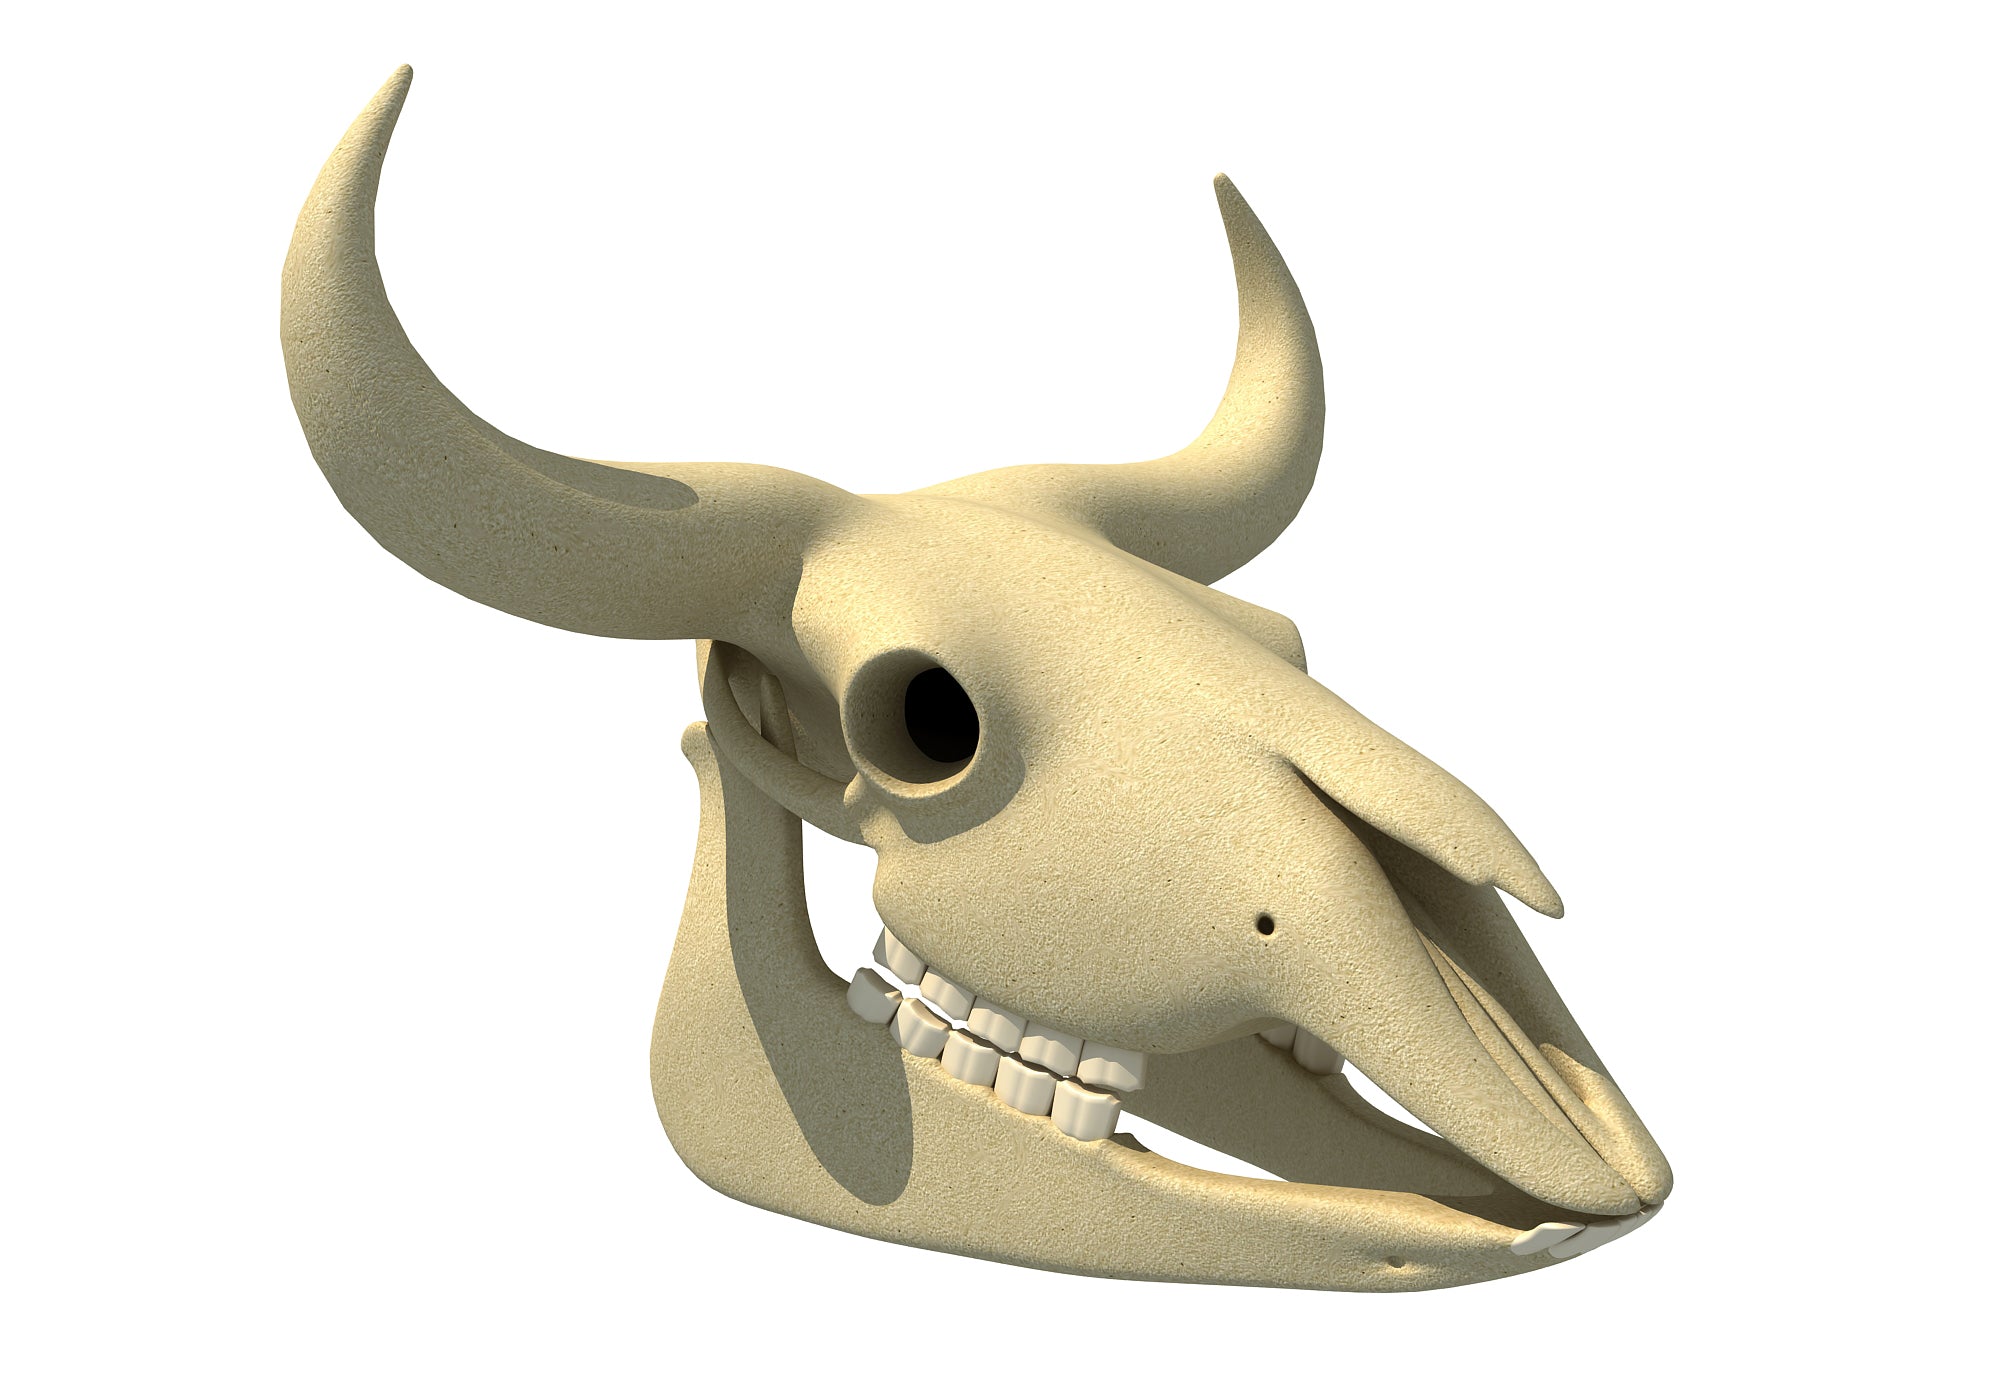 Bison Skull